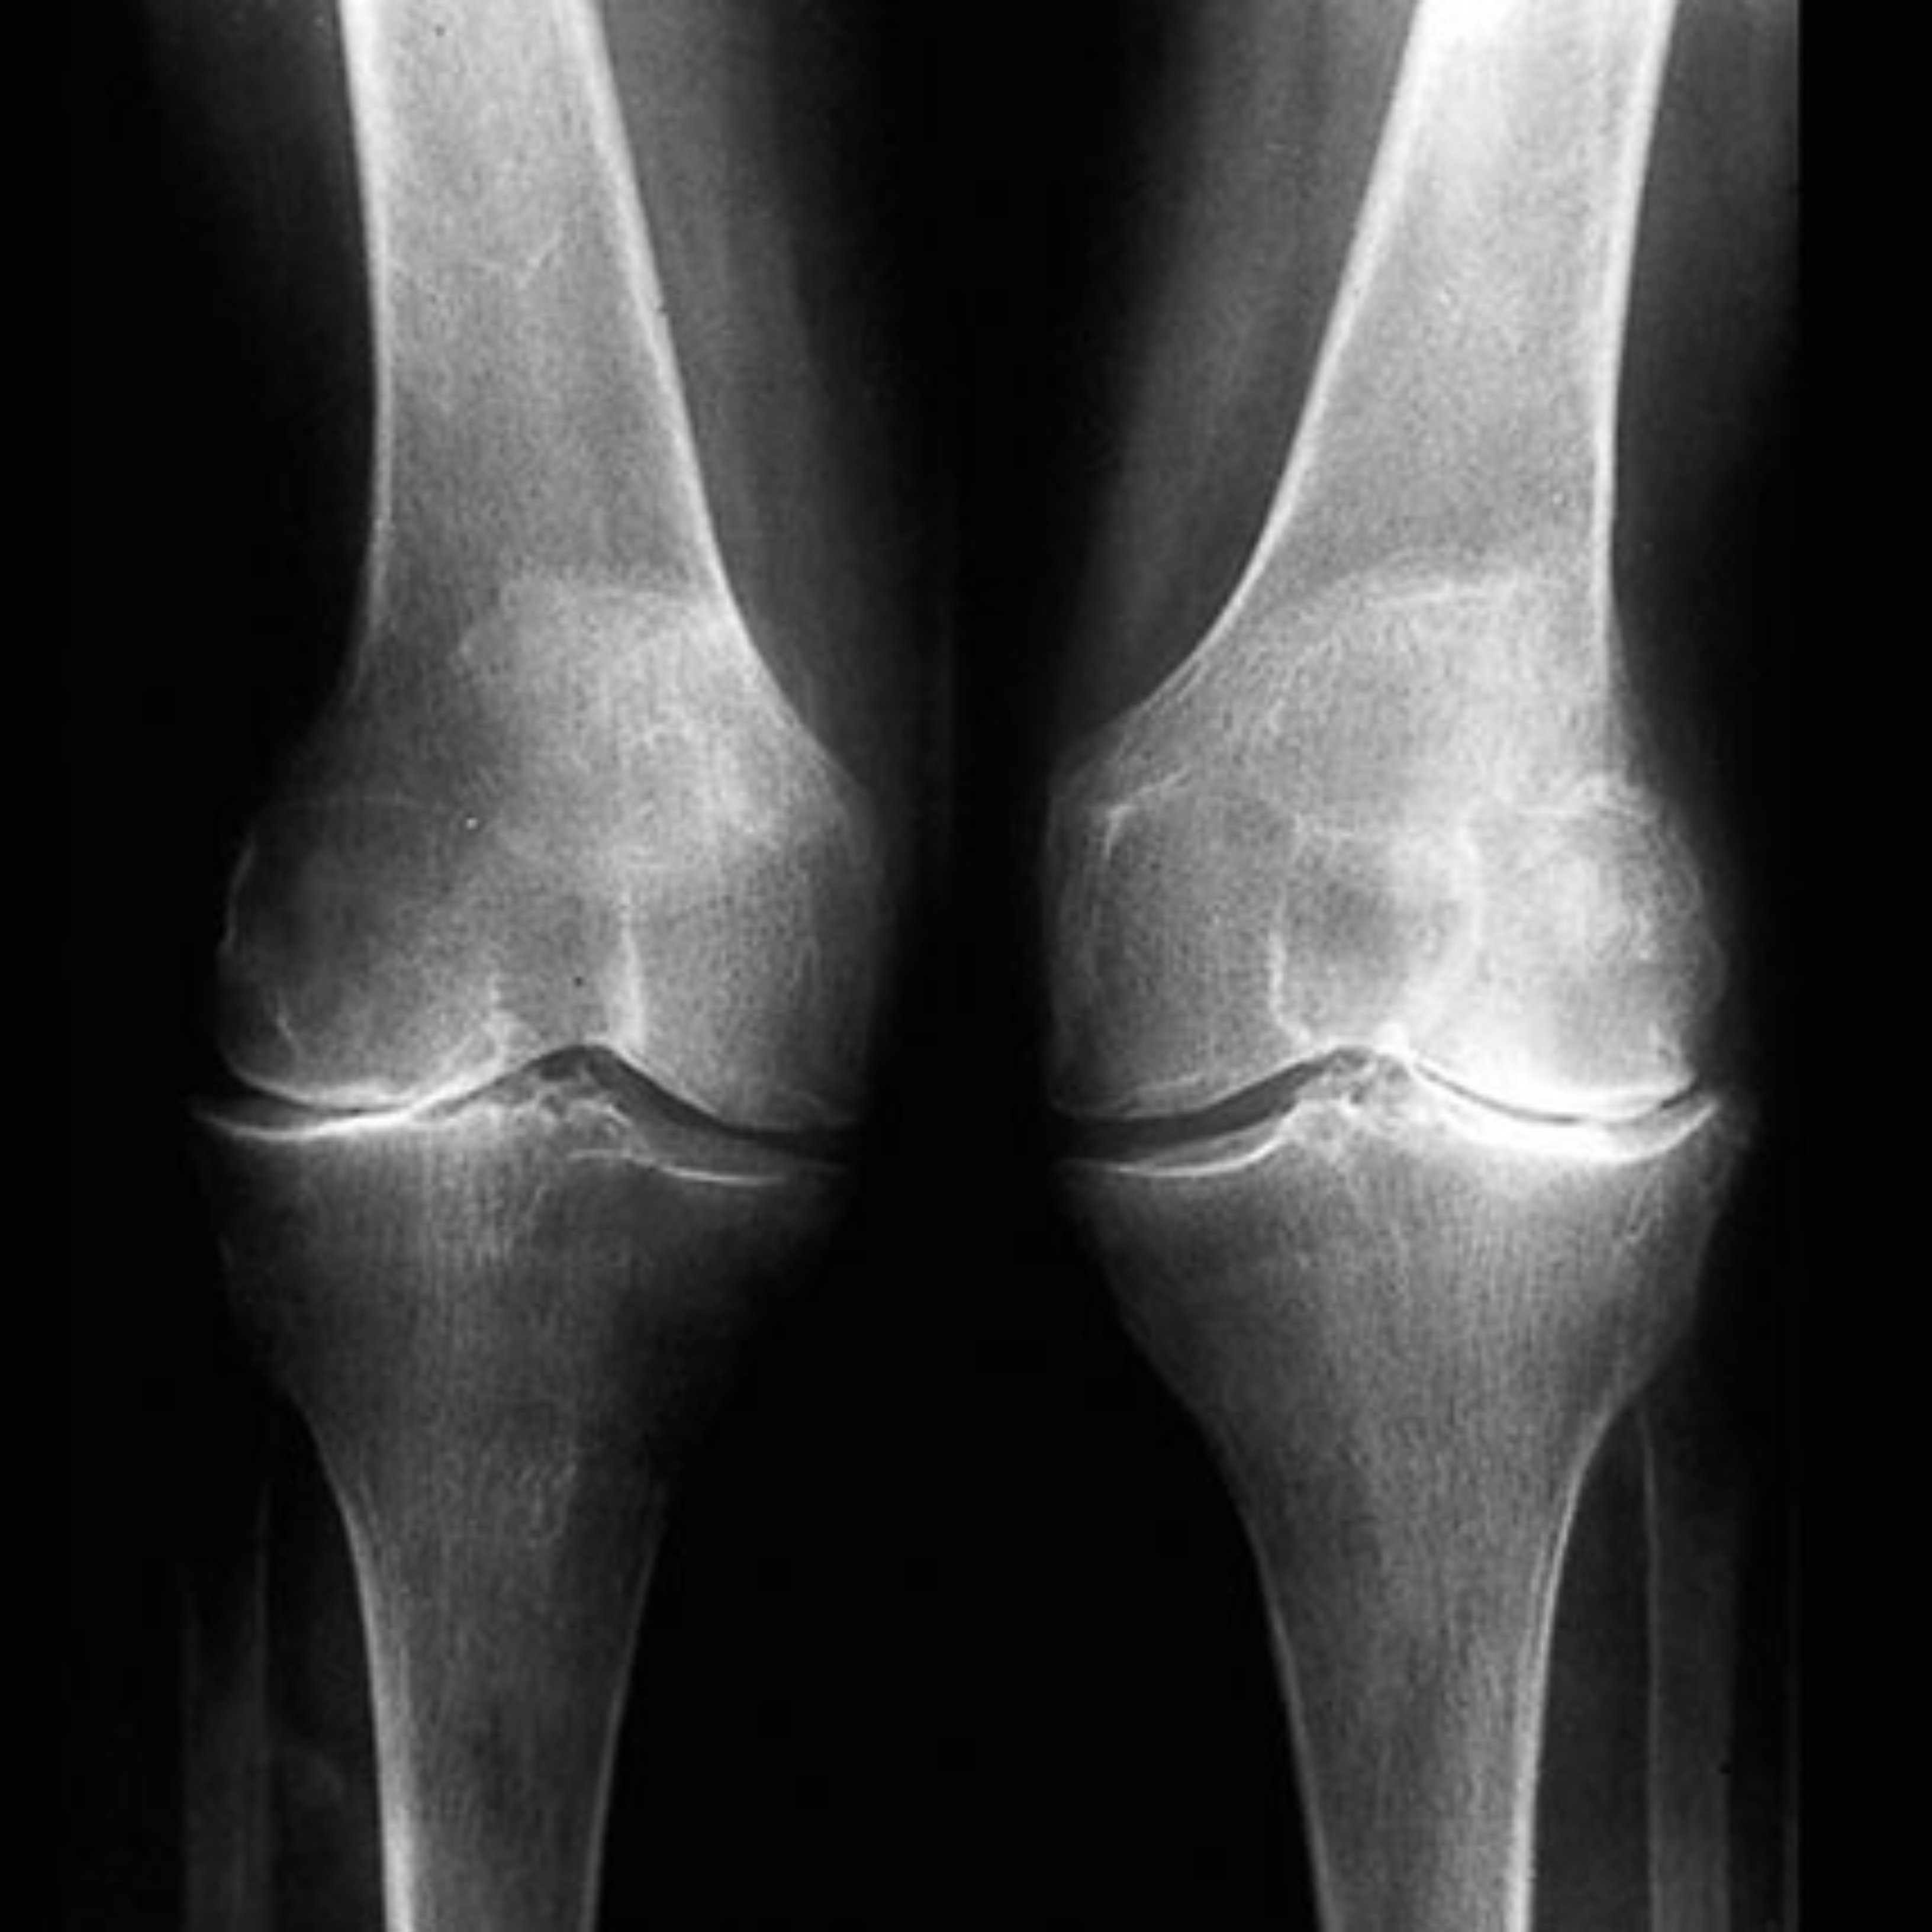 Los síntomas que te pueden indicar que tienes artrosis en la rodilla